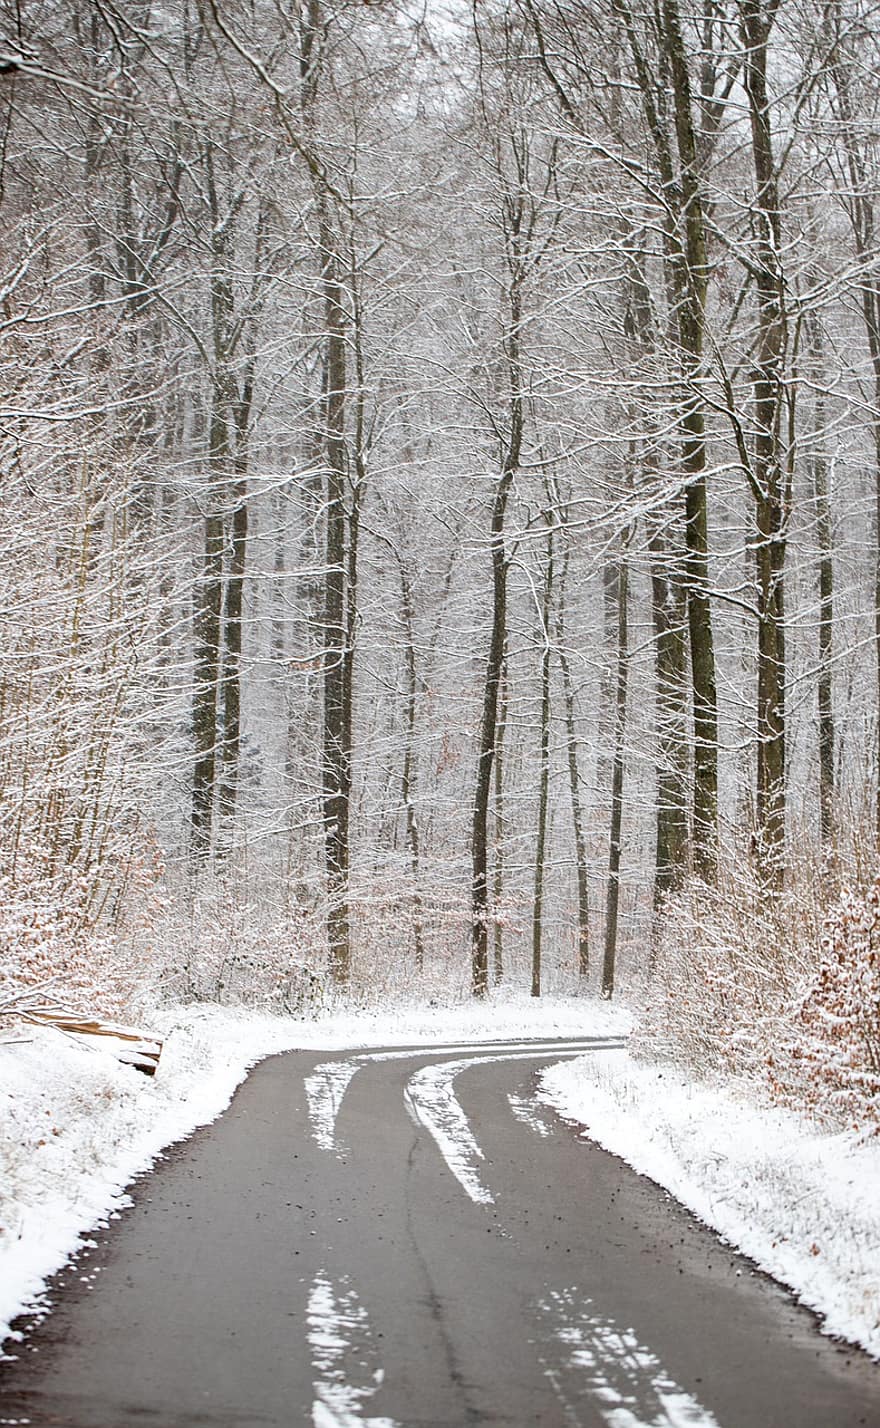 väg, träd, skog, snö, vintrig, snöflingor, is, frysta, frost, kall, vinter-